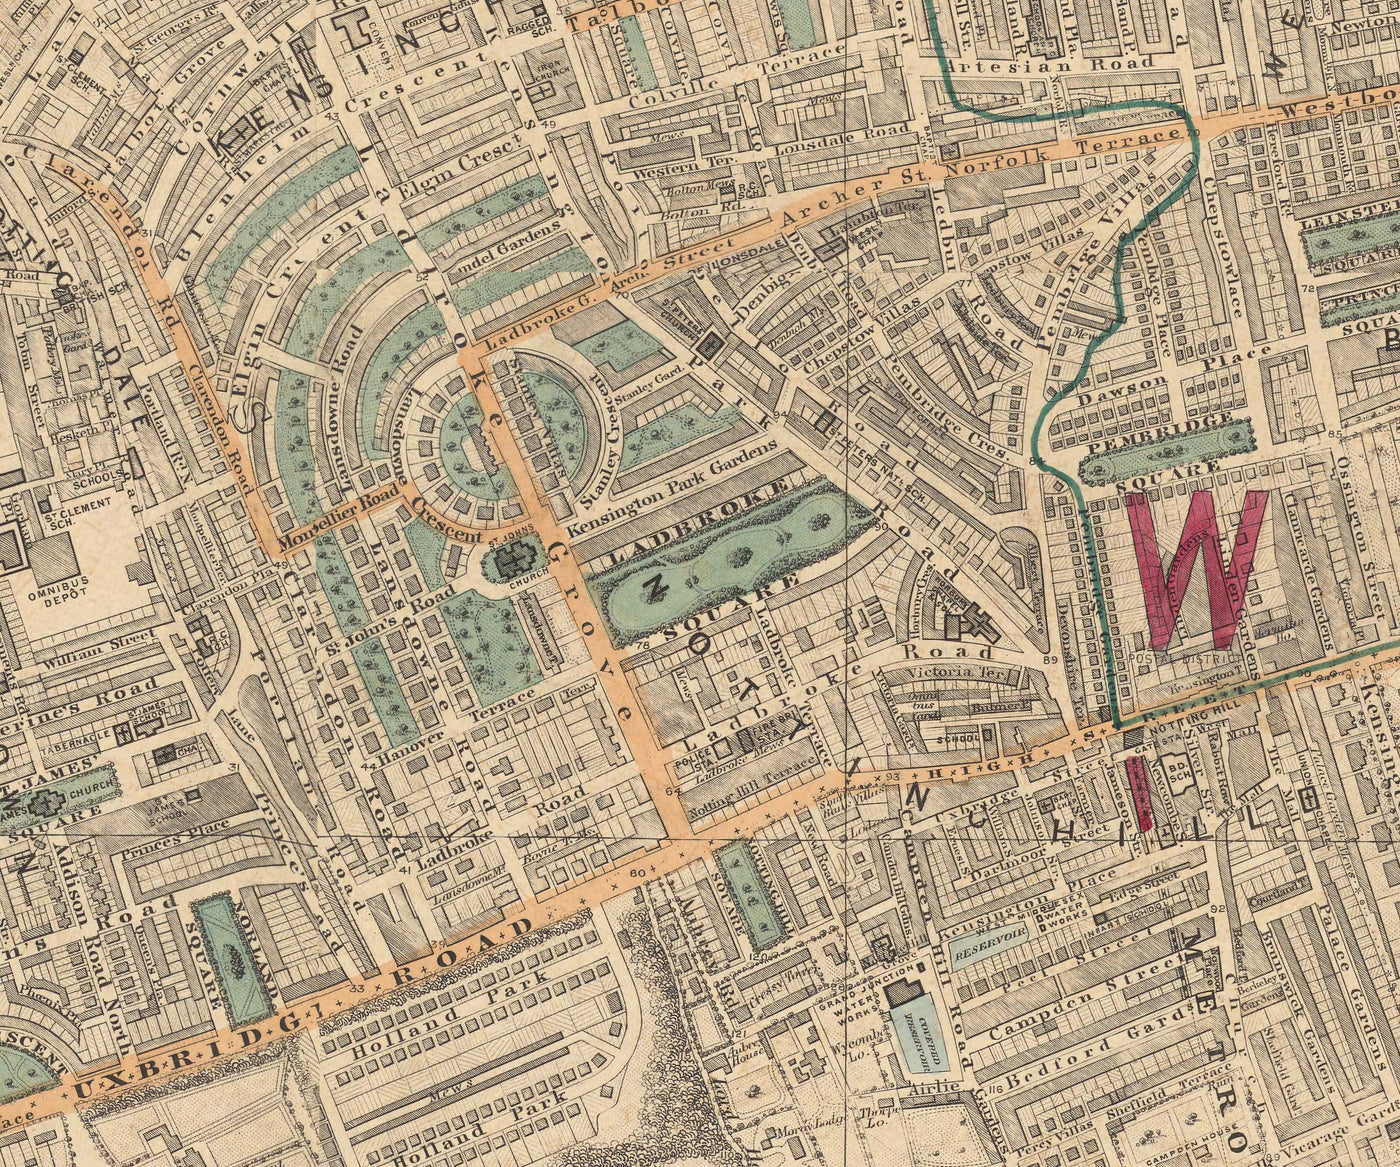 Ancienne carte en couleur de l'ouest de Londres - Notting Hill, Kensington, Portobello Road, Shepherds Bush, Bayswater - W11 W2 W8 SW7 W14 W6 W12 W10